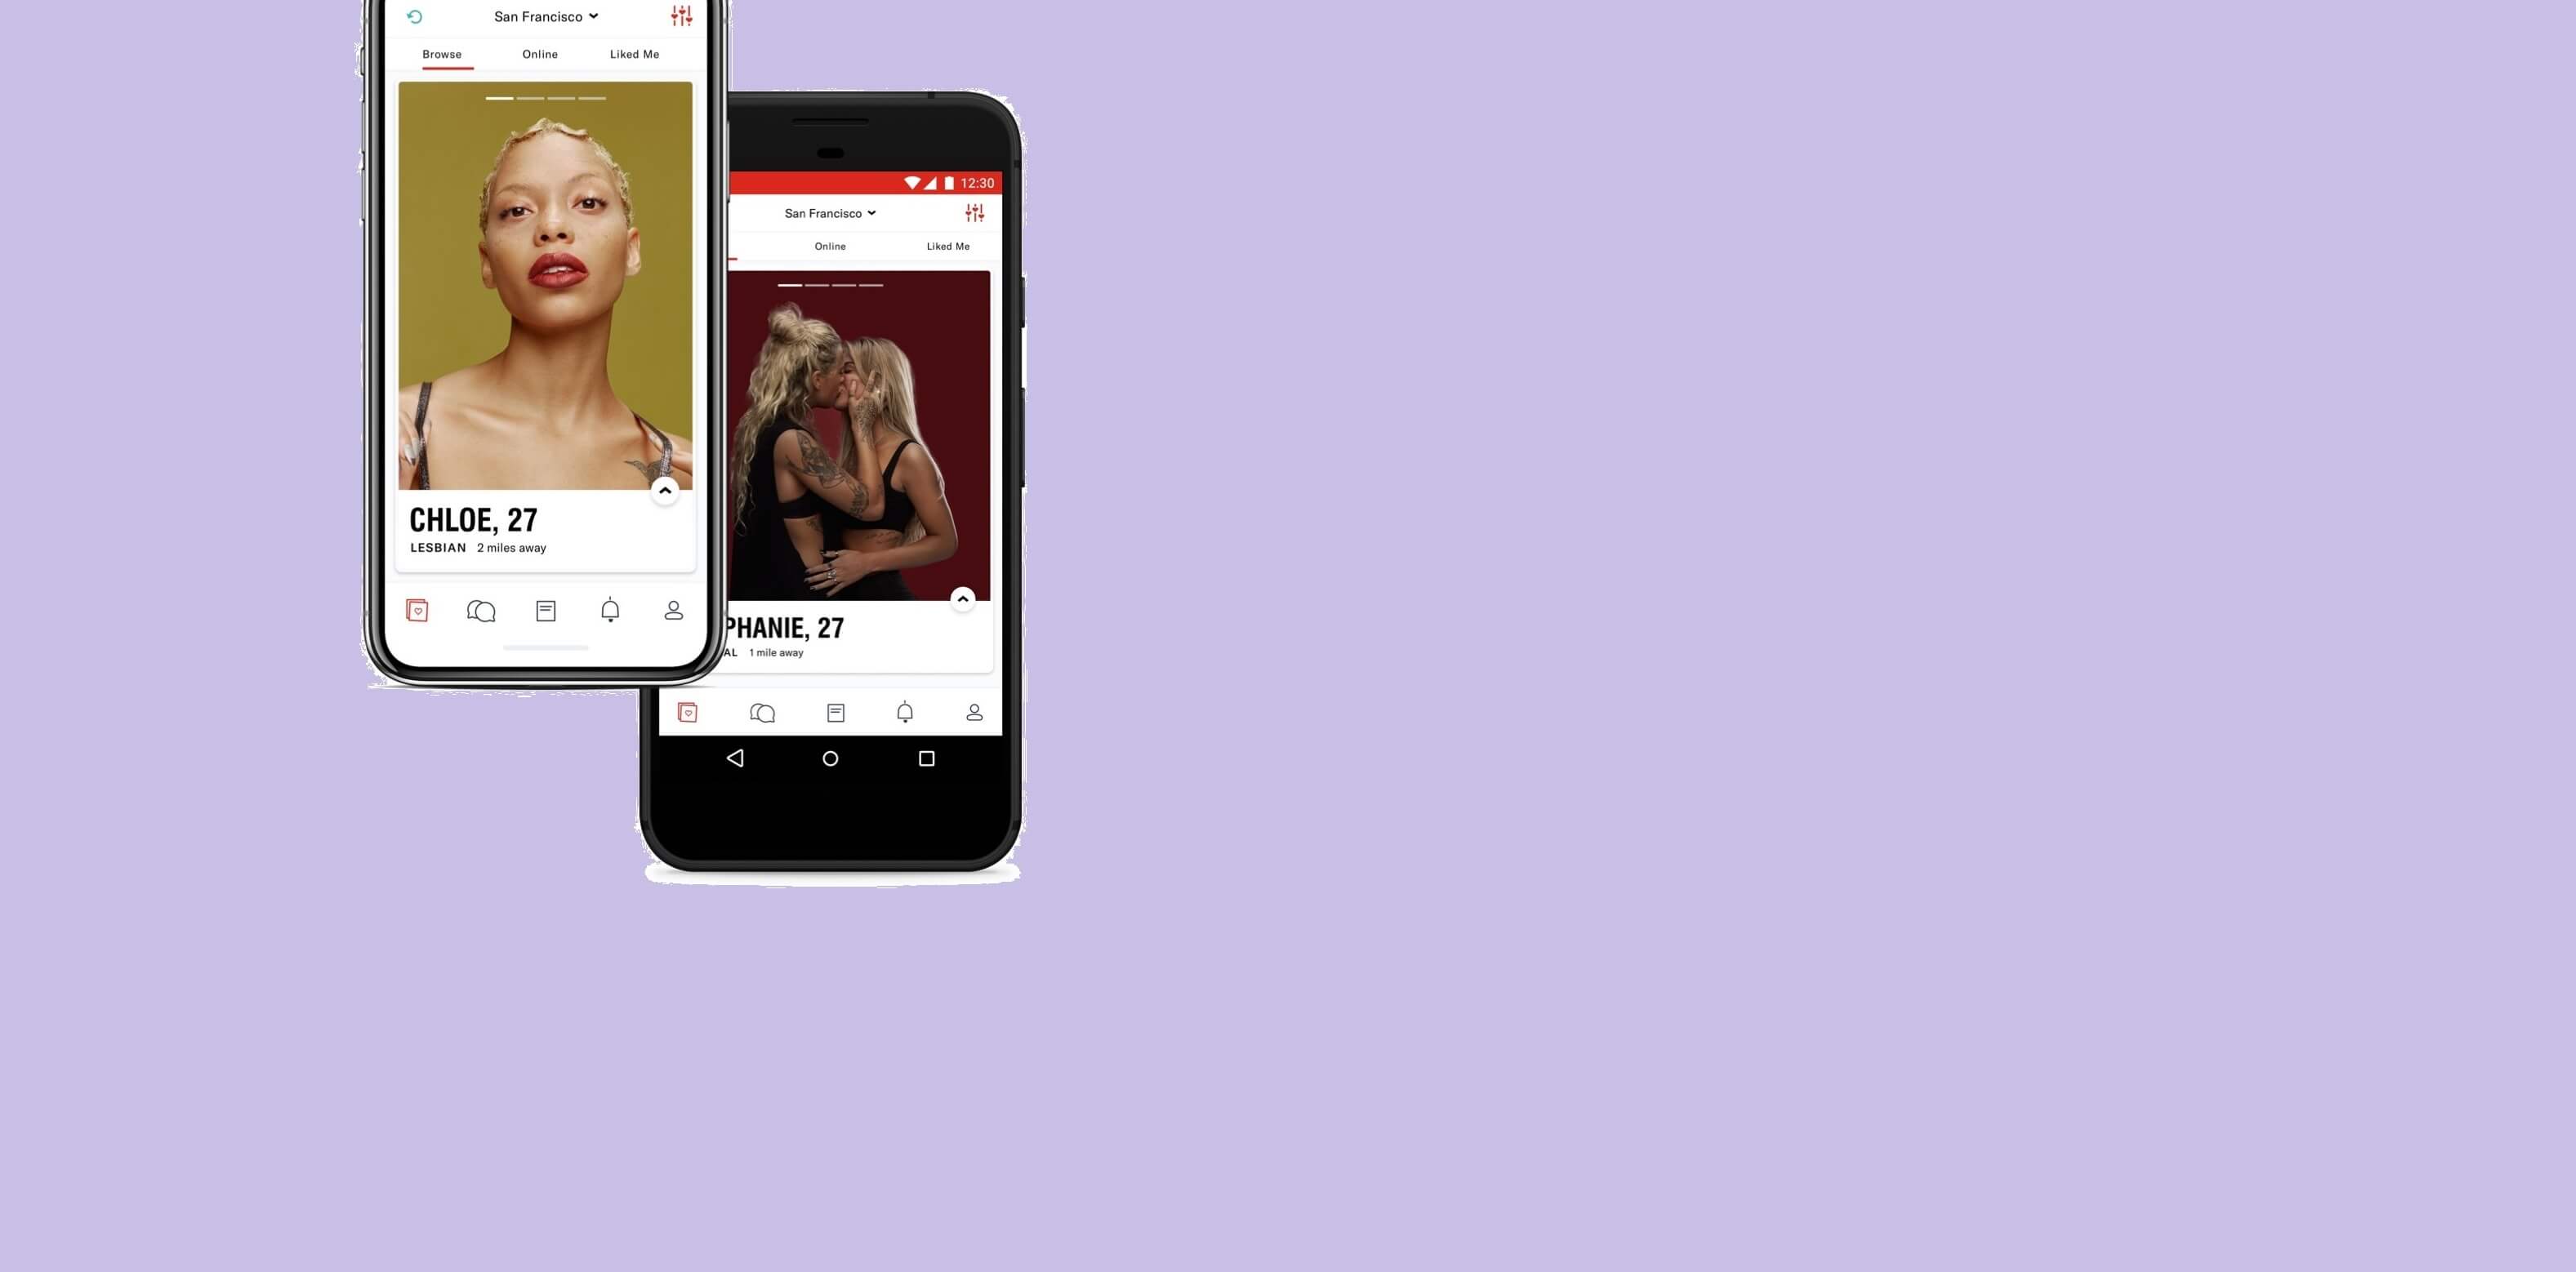 Lesben dating apps für die lesbische partnersuche